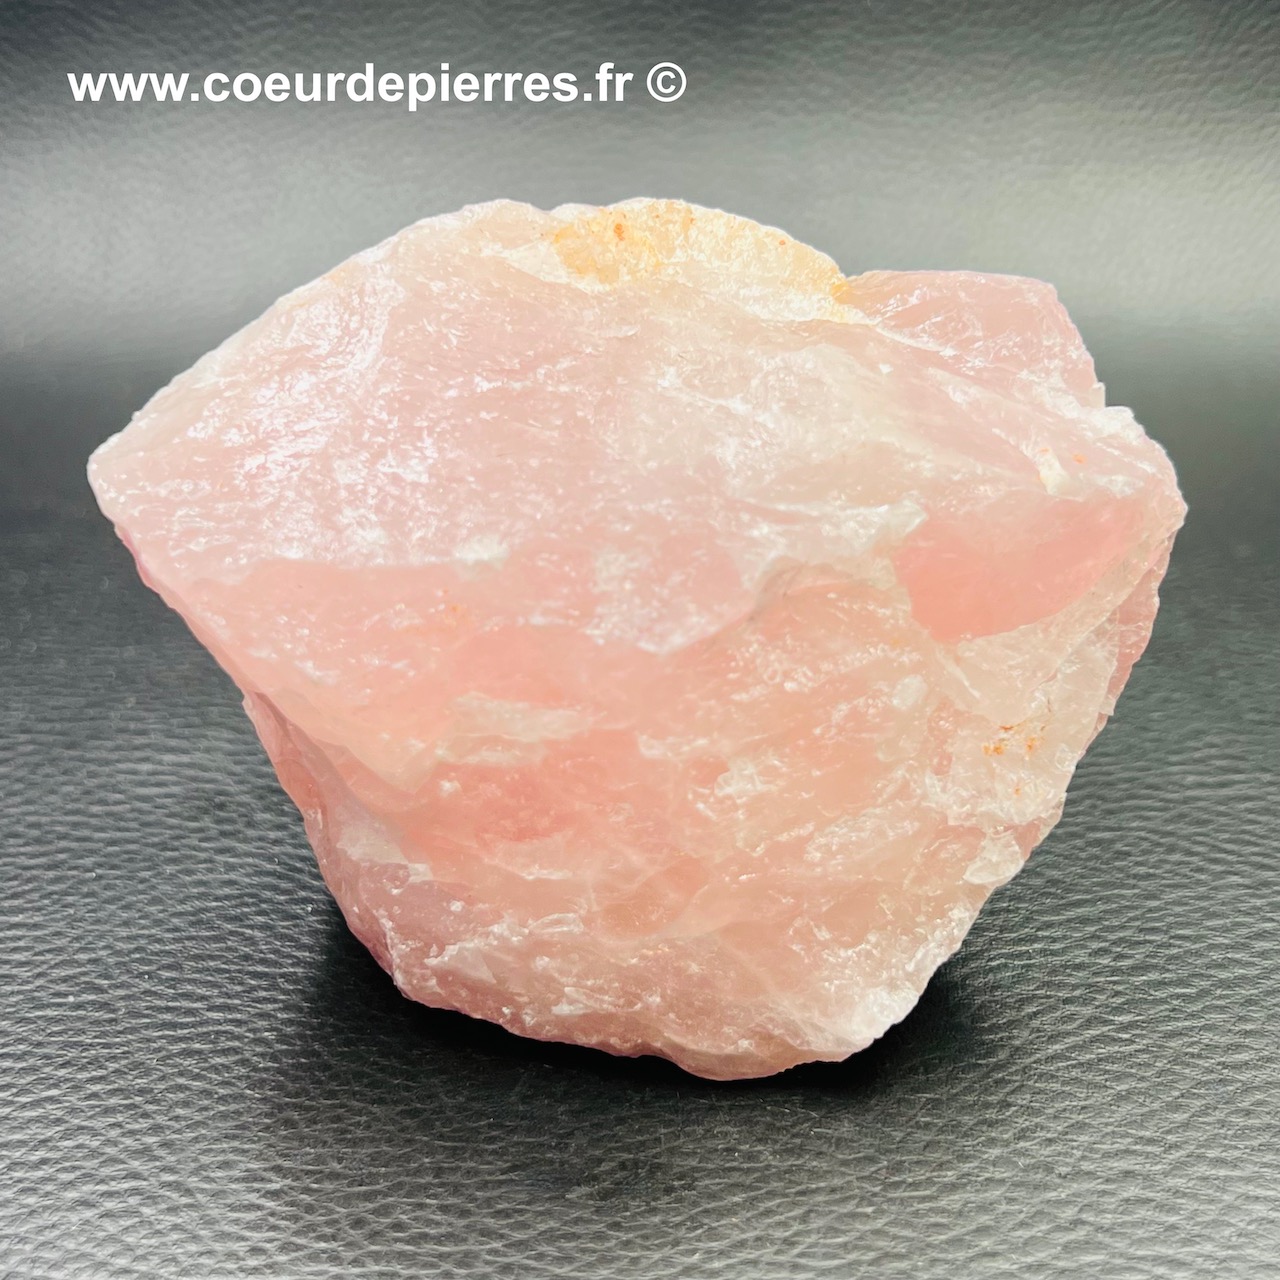 Bloc brut de quartz rose de Madagascar 0,436Kg (réf prb3)